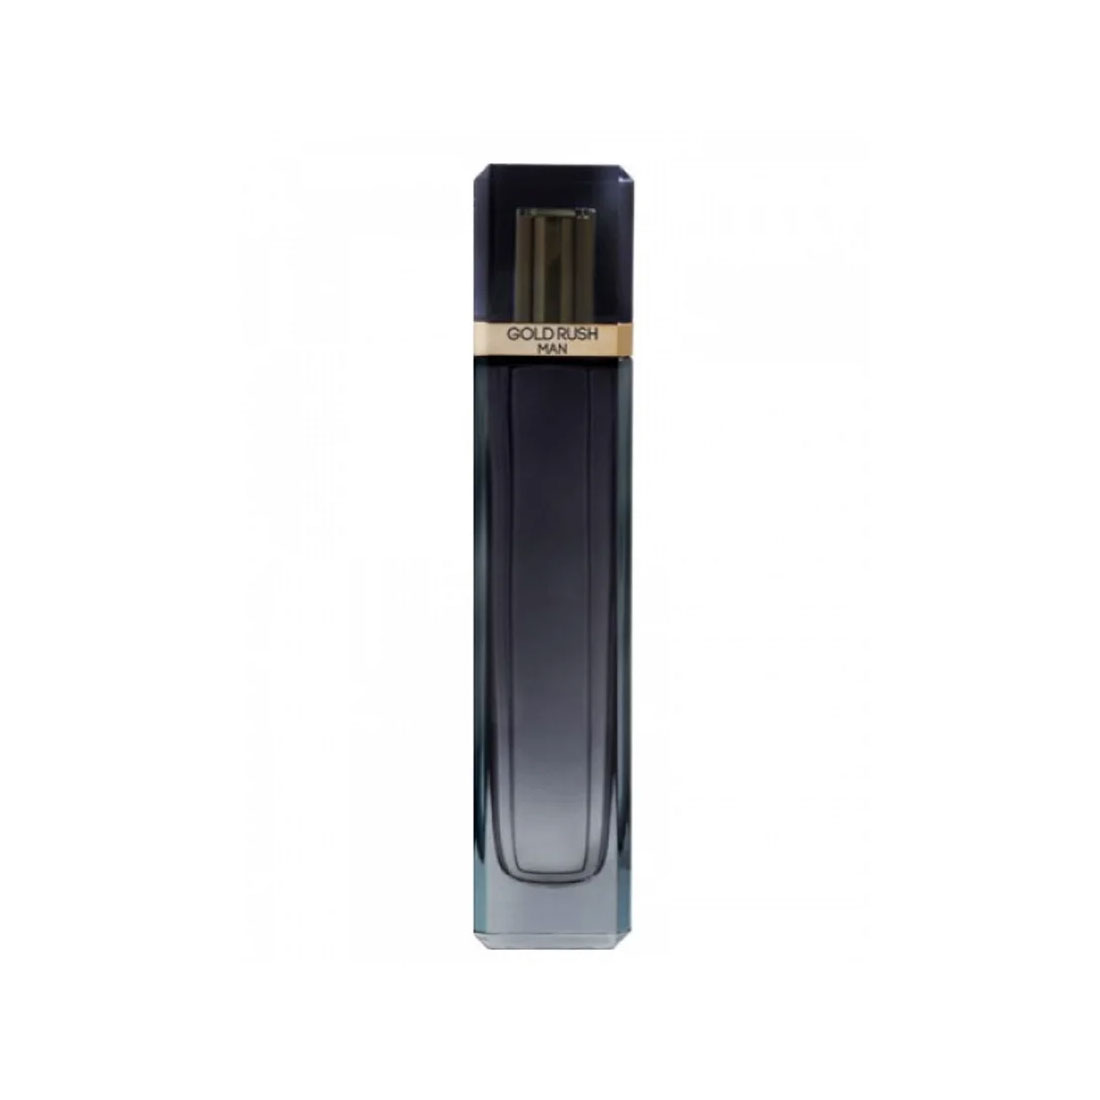 Perfume Hombre Gold Rush Eau de Parfum 100 ml Paris Hilton